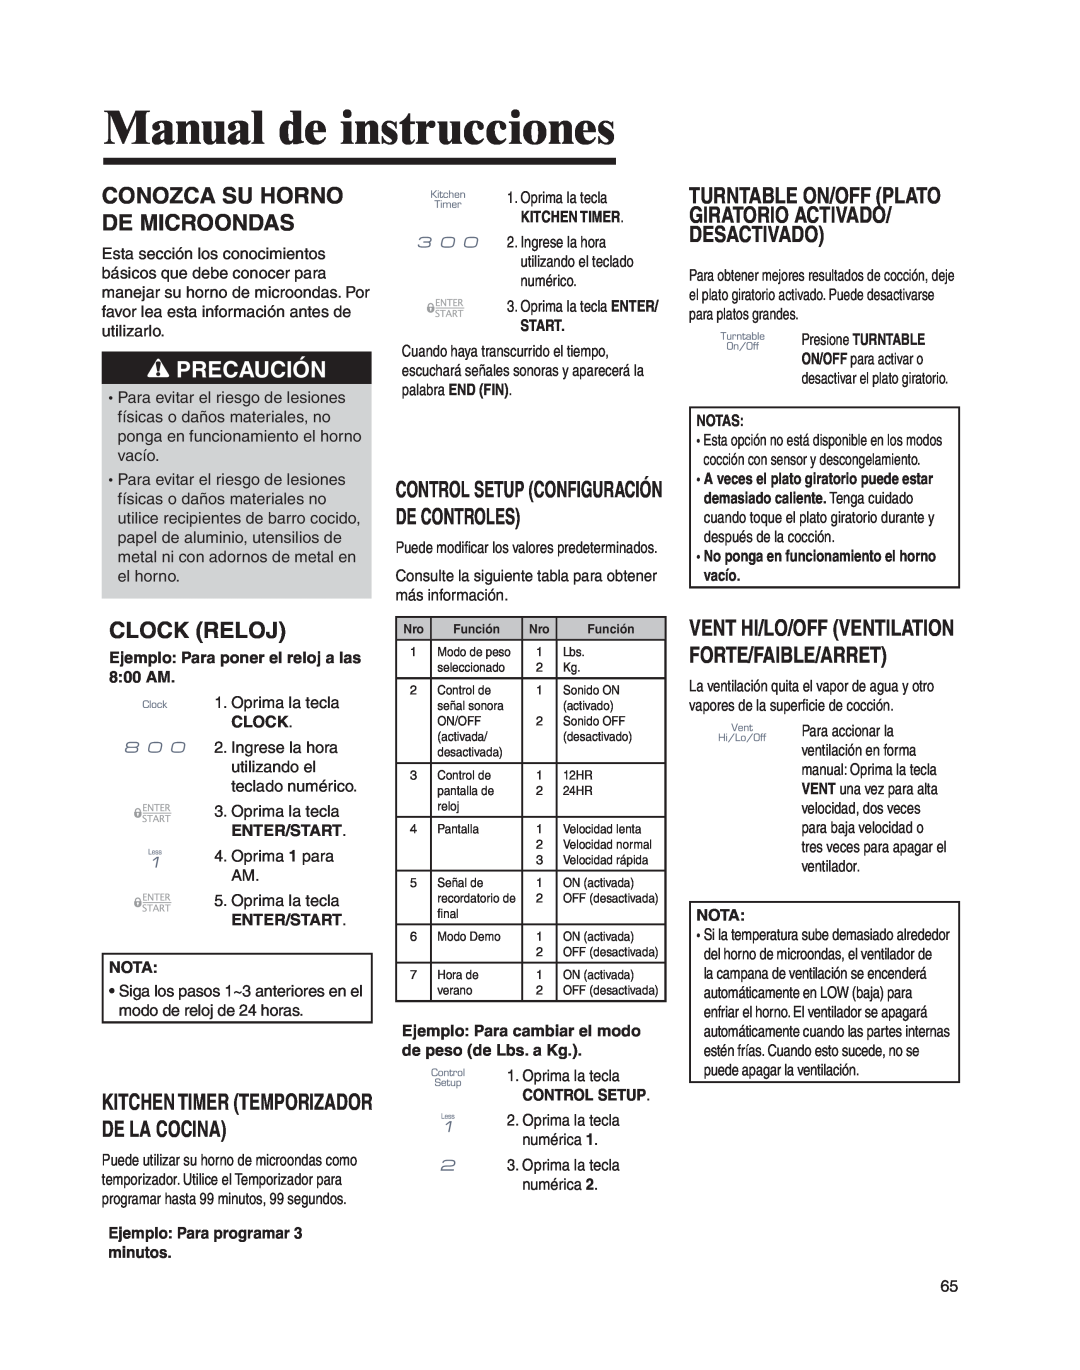 Whirlpool MMV4205BA Manual de instrucciones, Conozca Su Horno De Microondas, Clock Reloj, Precaución 